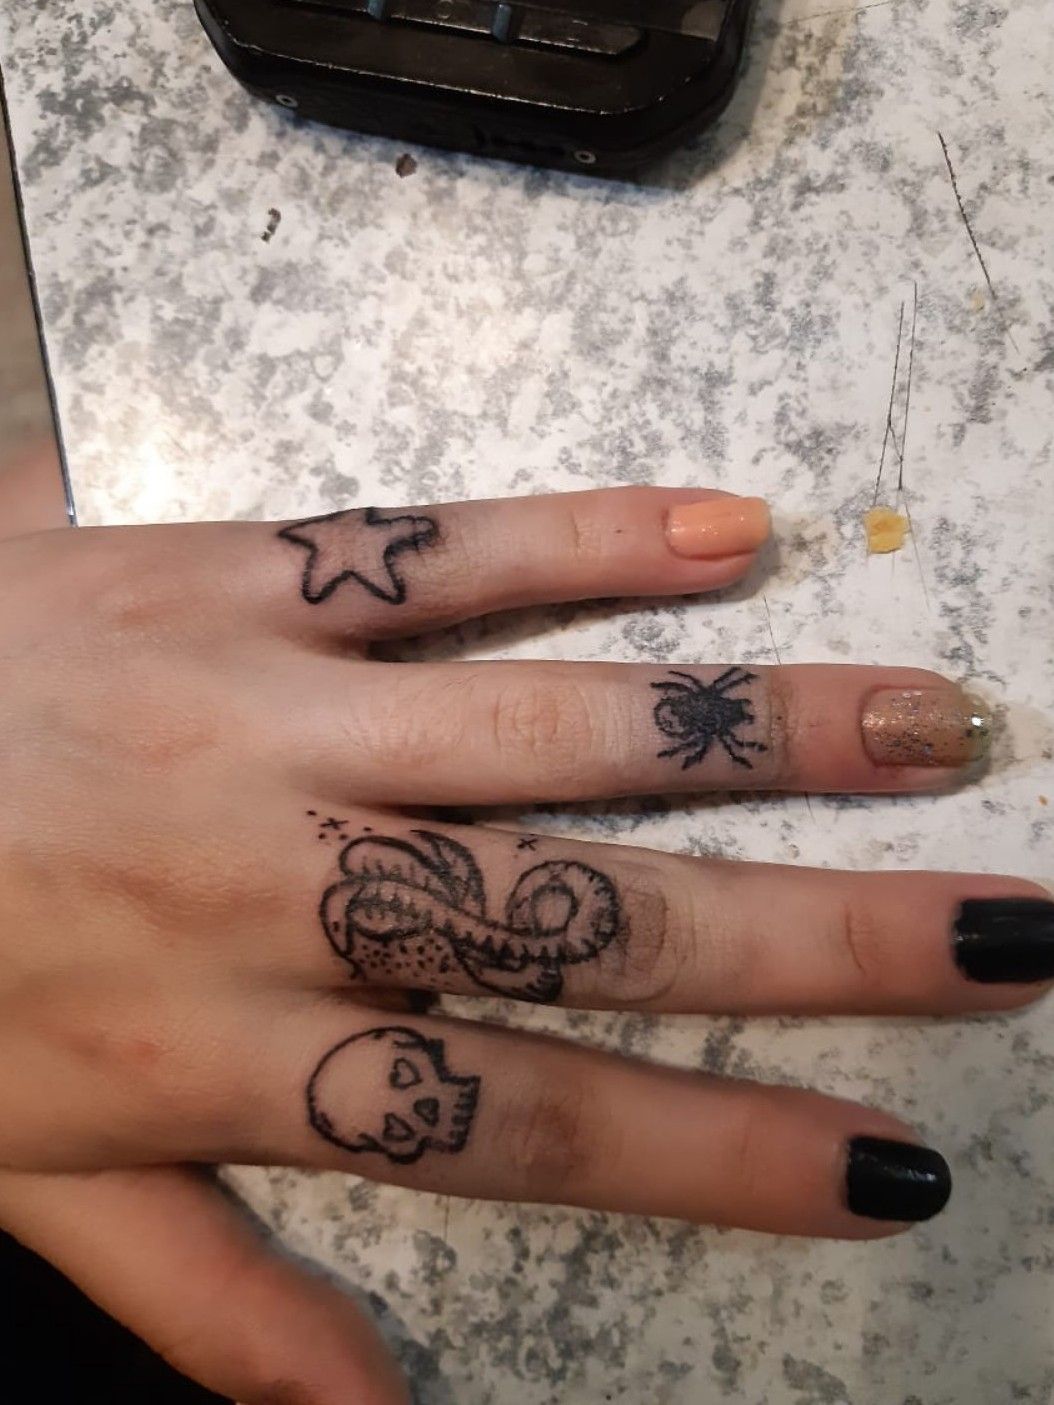 16 Tony Spider Tattoos On Wrist  Tattoo Designs  TattoosBagcom